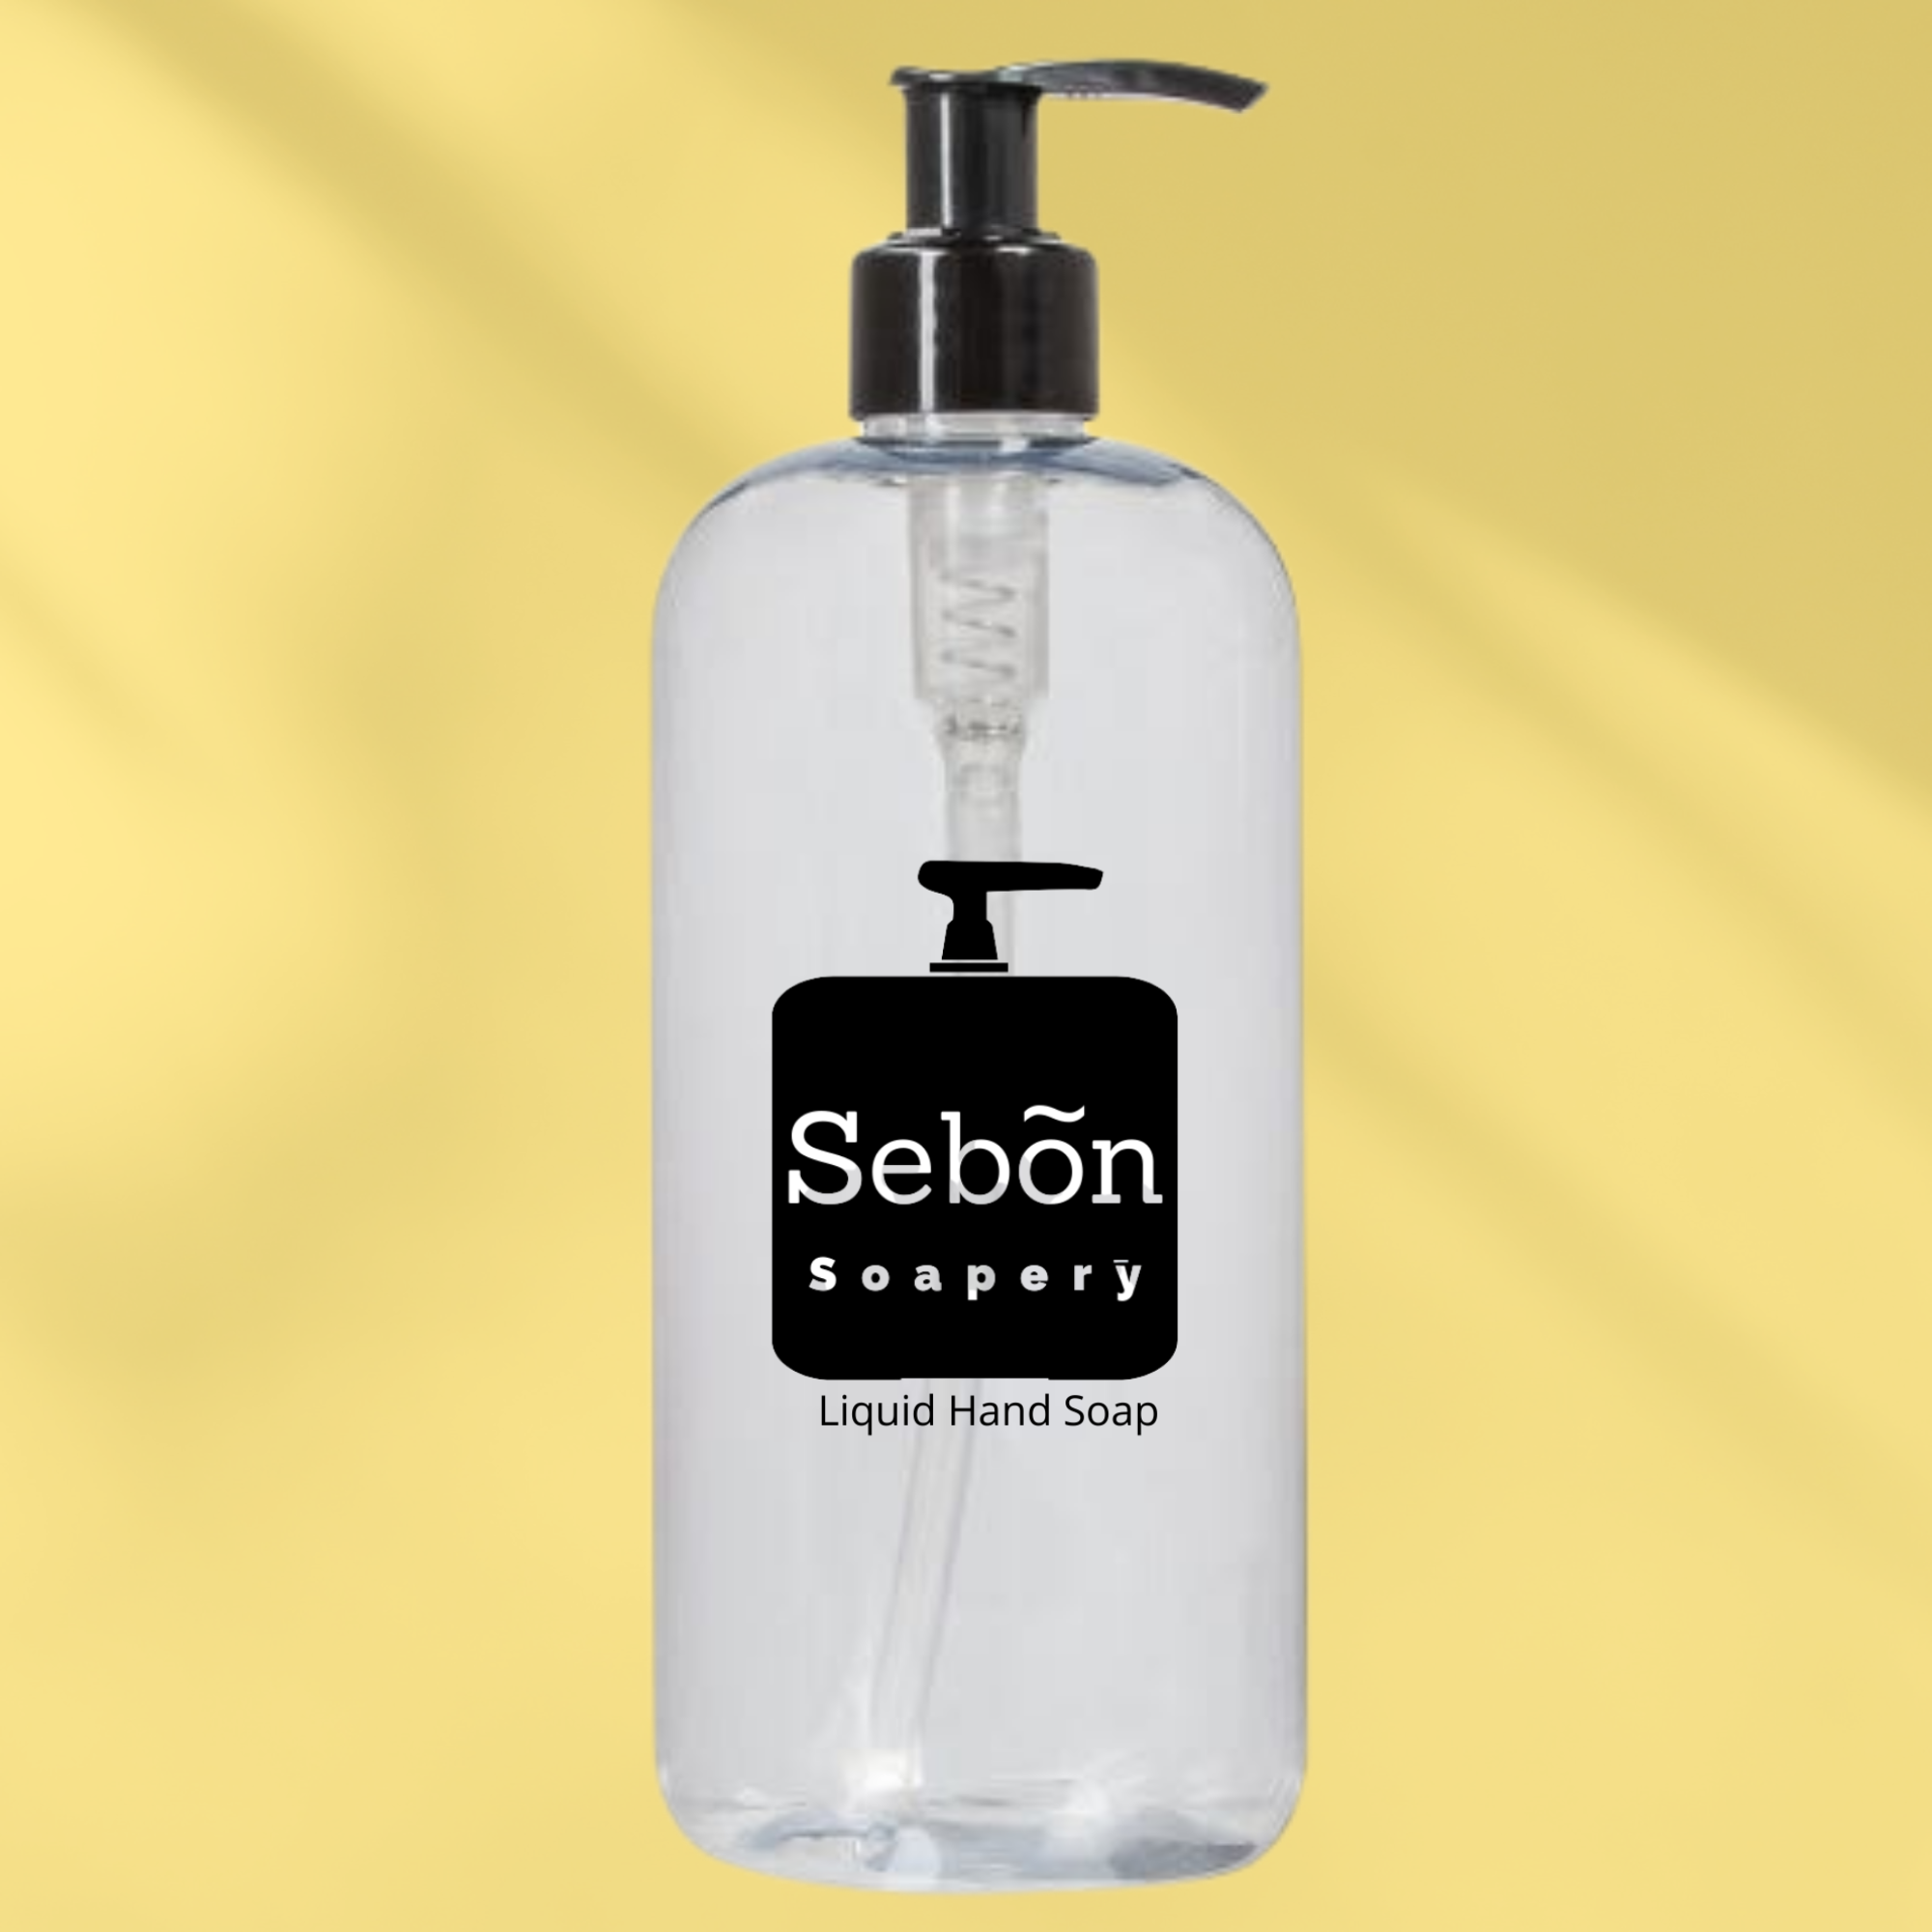 Sebon Wild Blackberry Vanilla Scented Liquid Hand Soap with Olive Oil